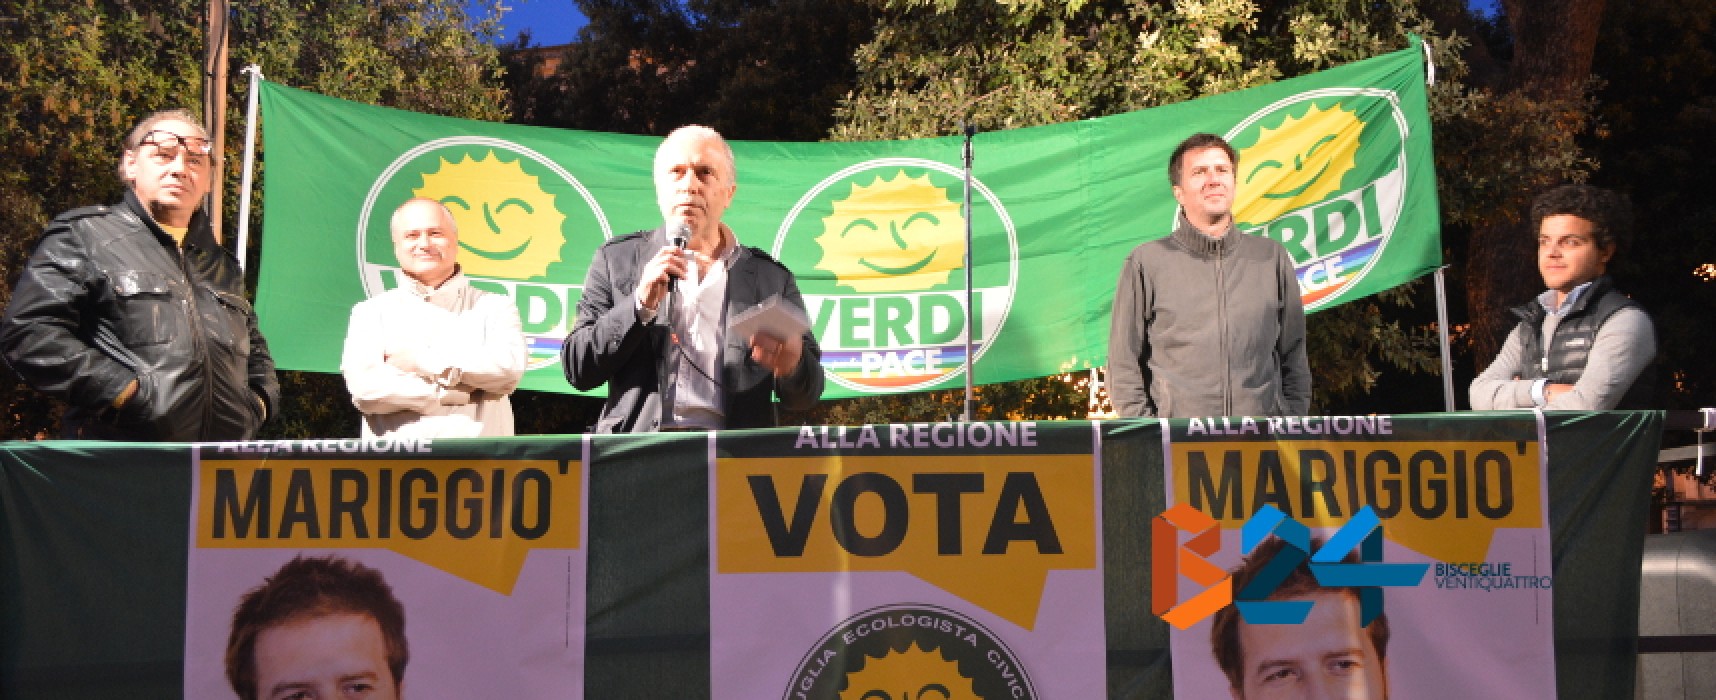 Mariggiò (Verdi): «Il nostro è il programma giusto per la Puglia». Bordate di Mastrodonato a Spina e Napoletano / AUDIO e FOTO